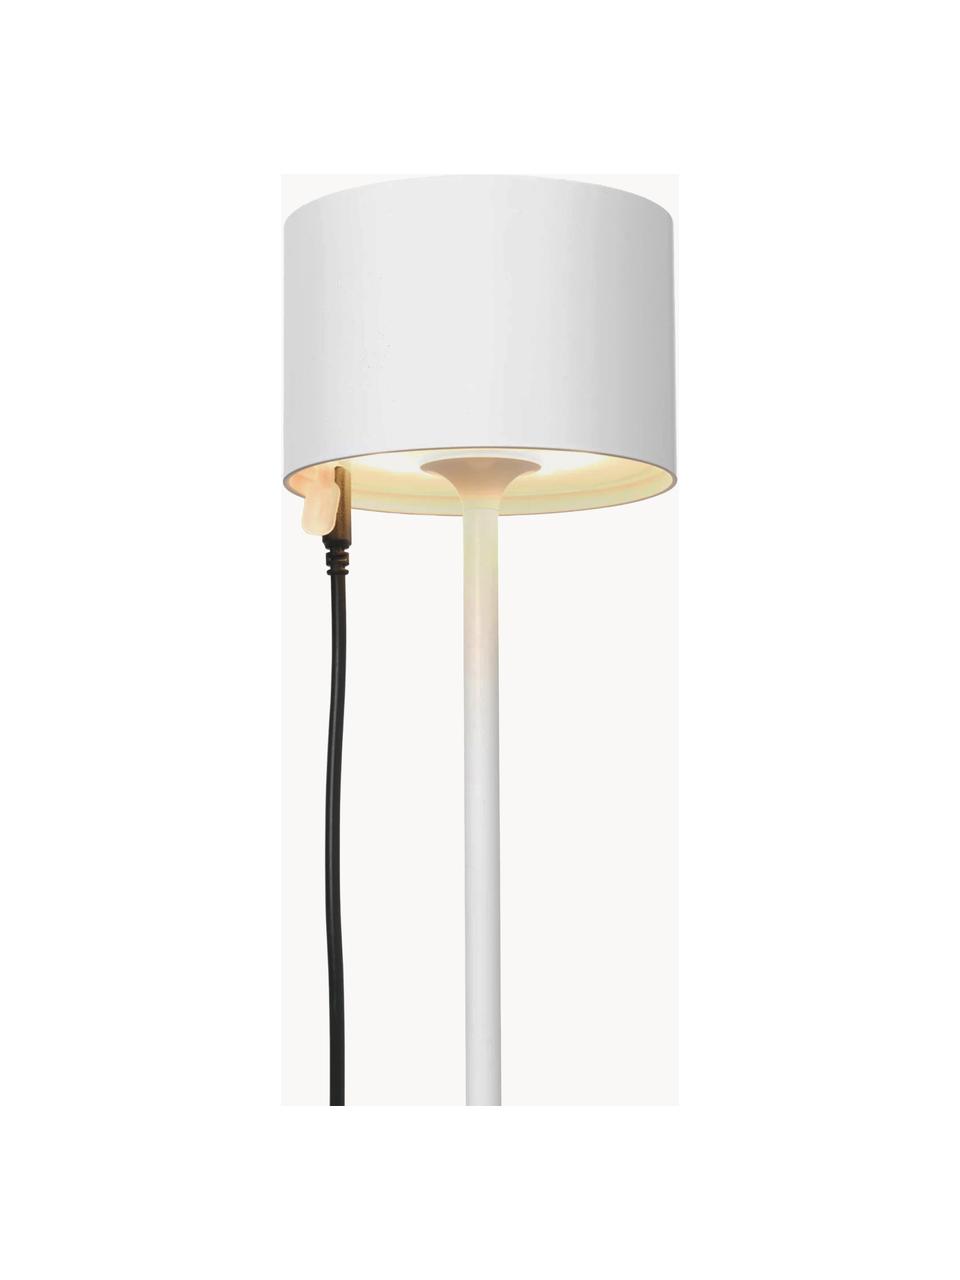 Mobilna lampa zewnętrzna LED z funkcją przyciemniania Farol, Biały, Ø 11 x W 34 cm